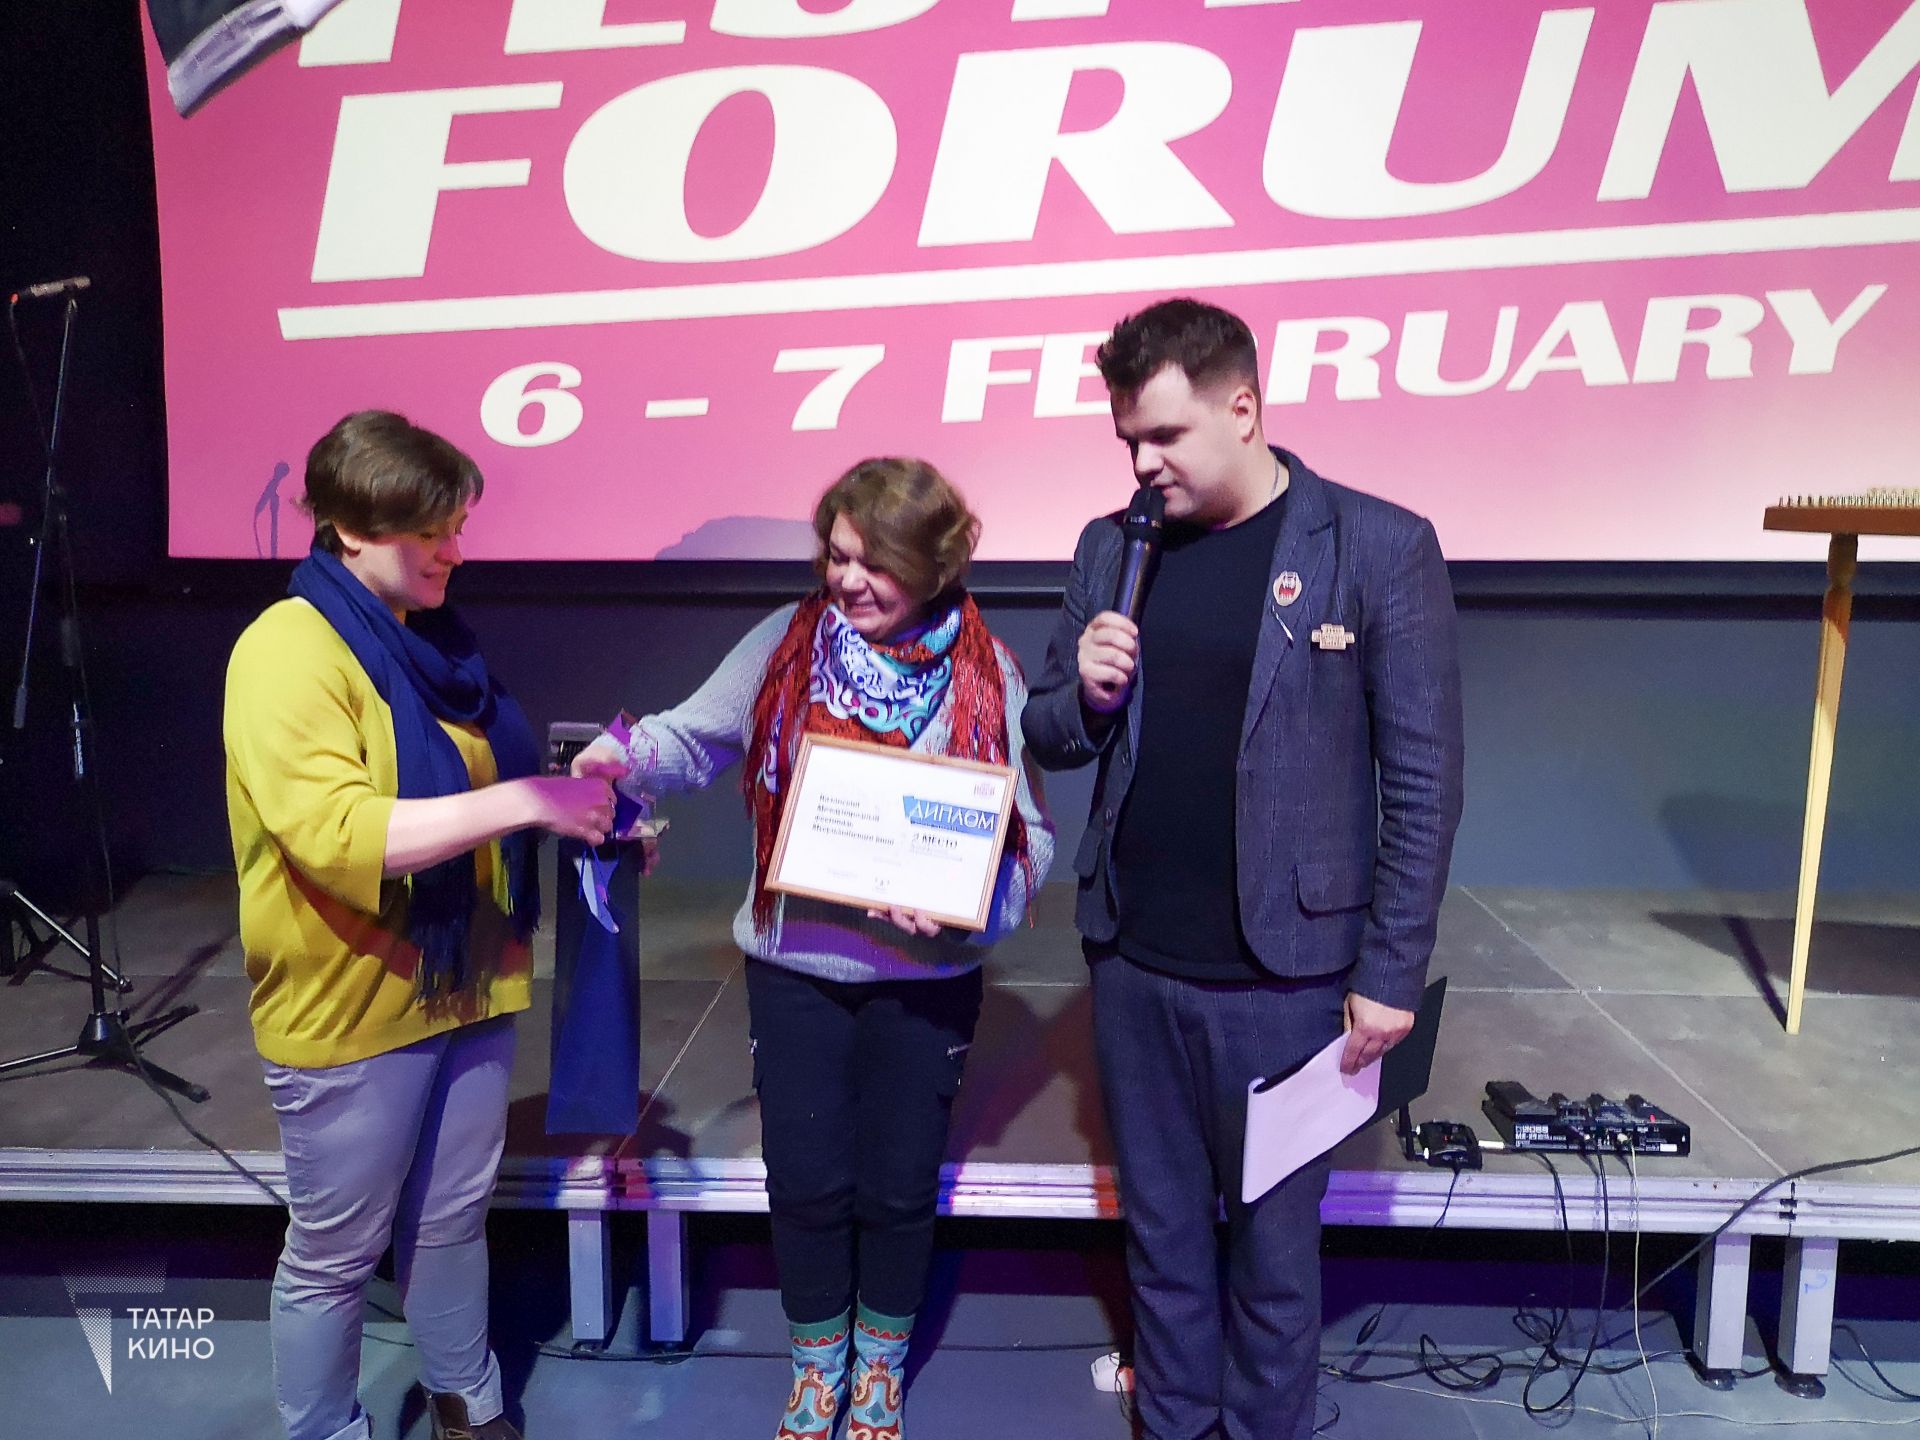 Казанский кинофестиваль взял призы сразу в двух номинациях на Festival Forum-2019